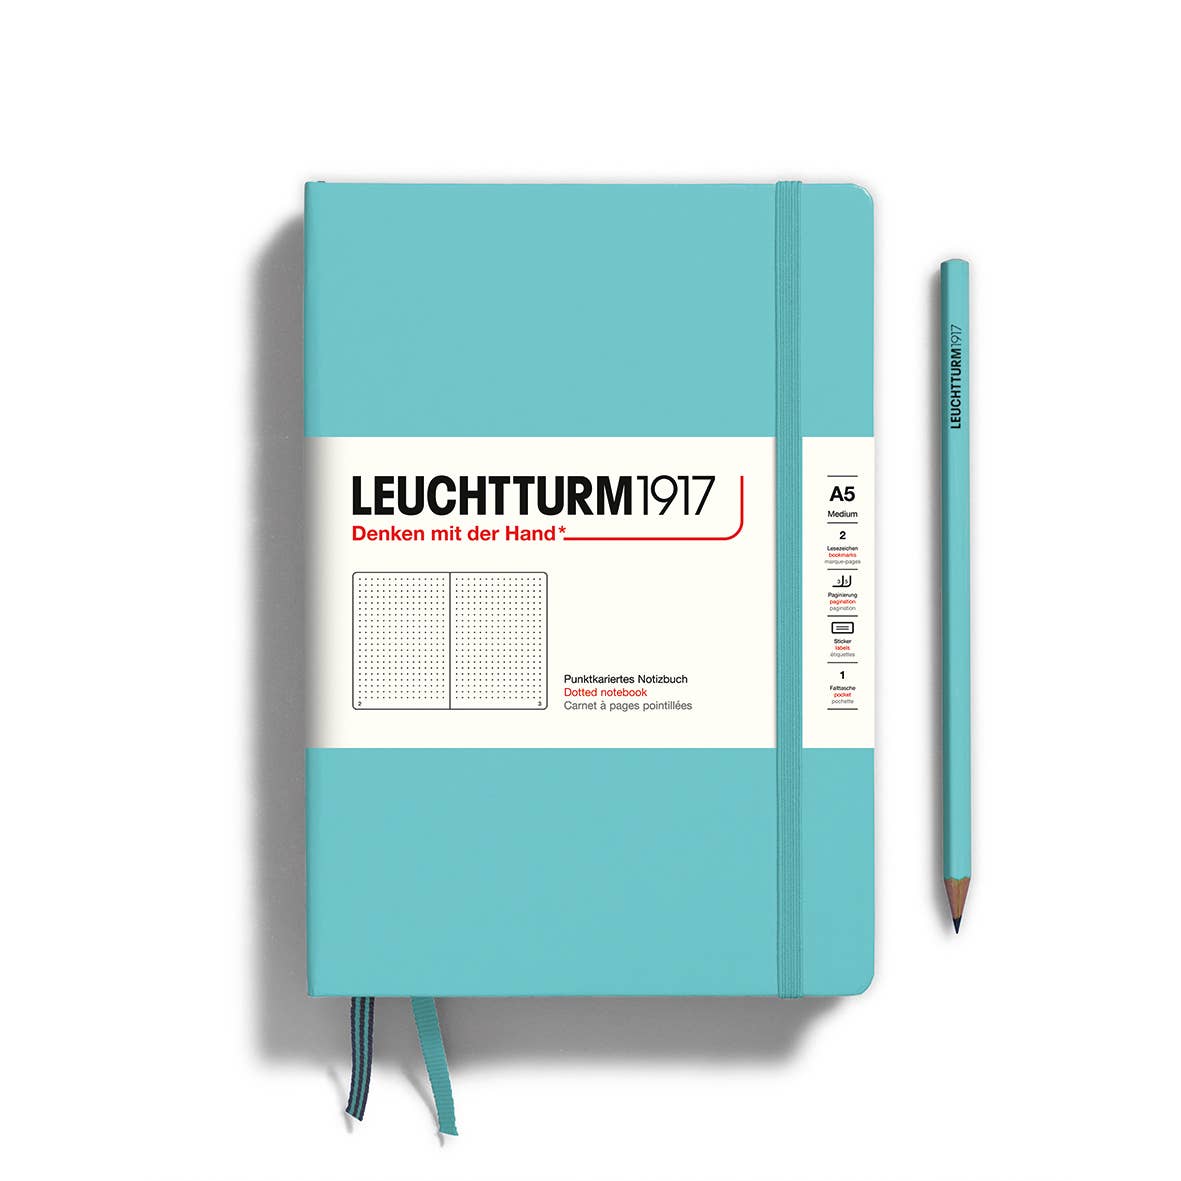 LEUCHTTURM1917 Notebooks - Medium (A5)